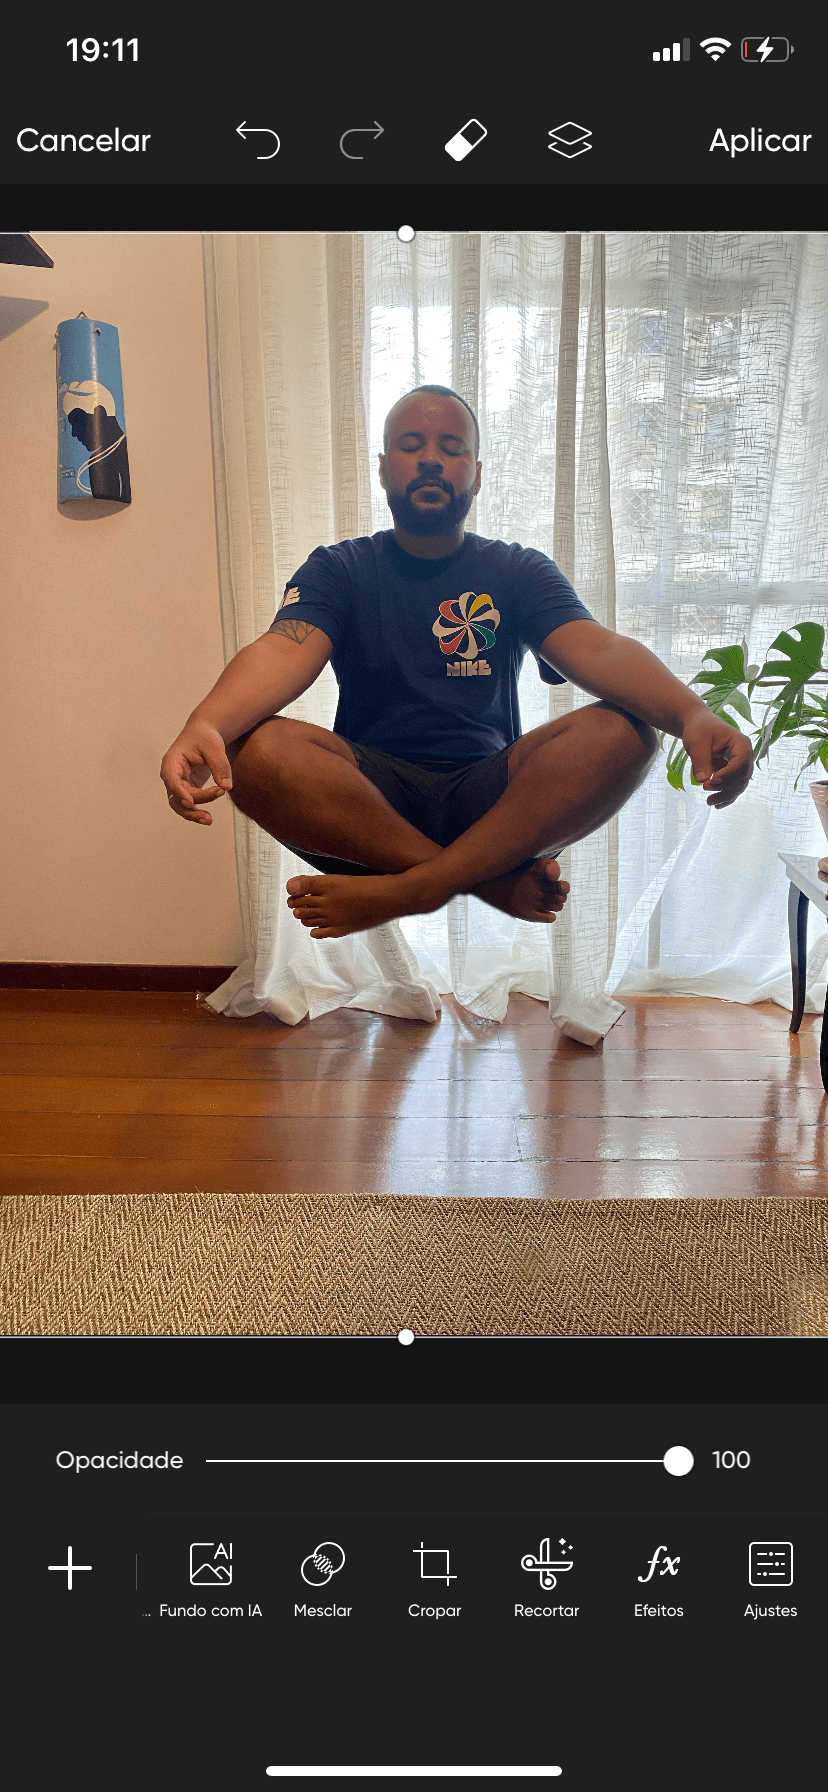 Imagem de um homem meditando como se estivesse levitando na sala.